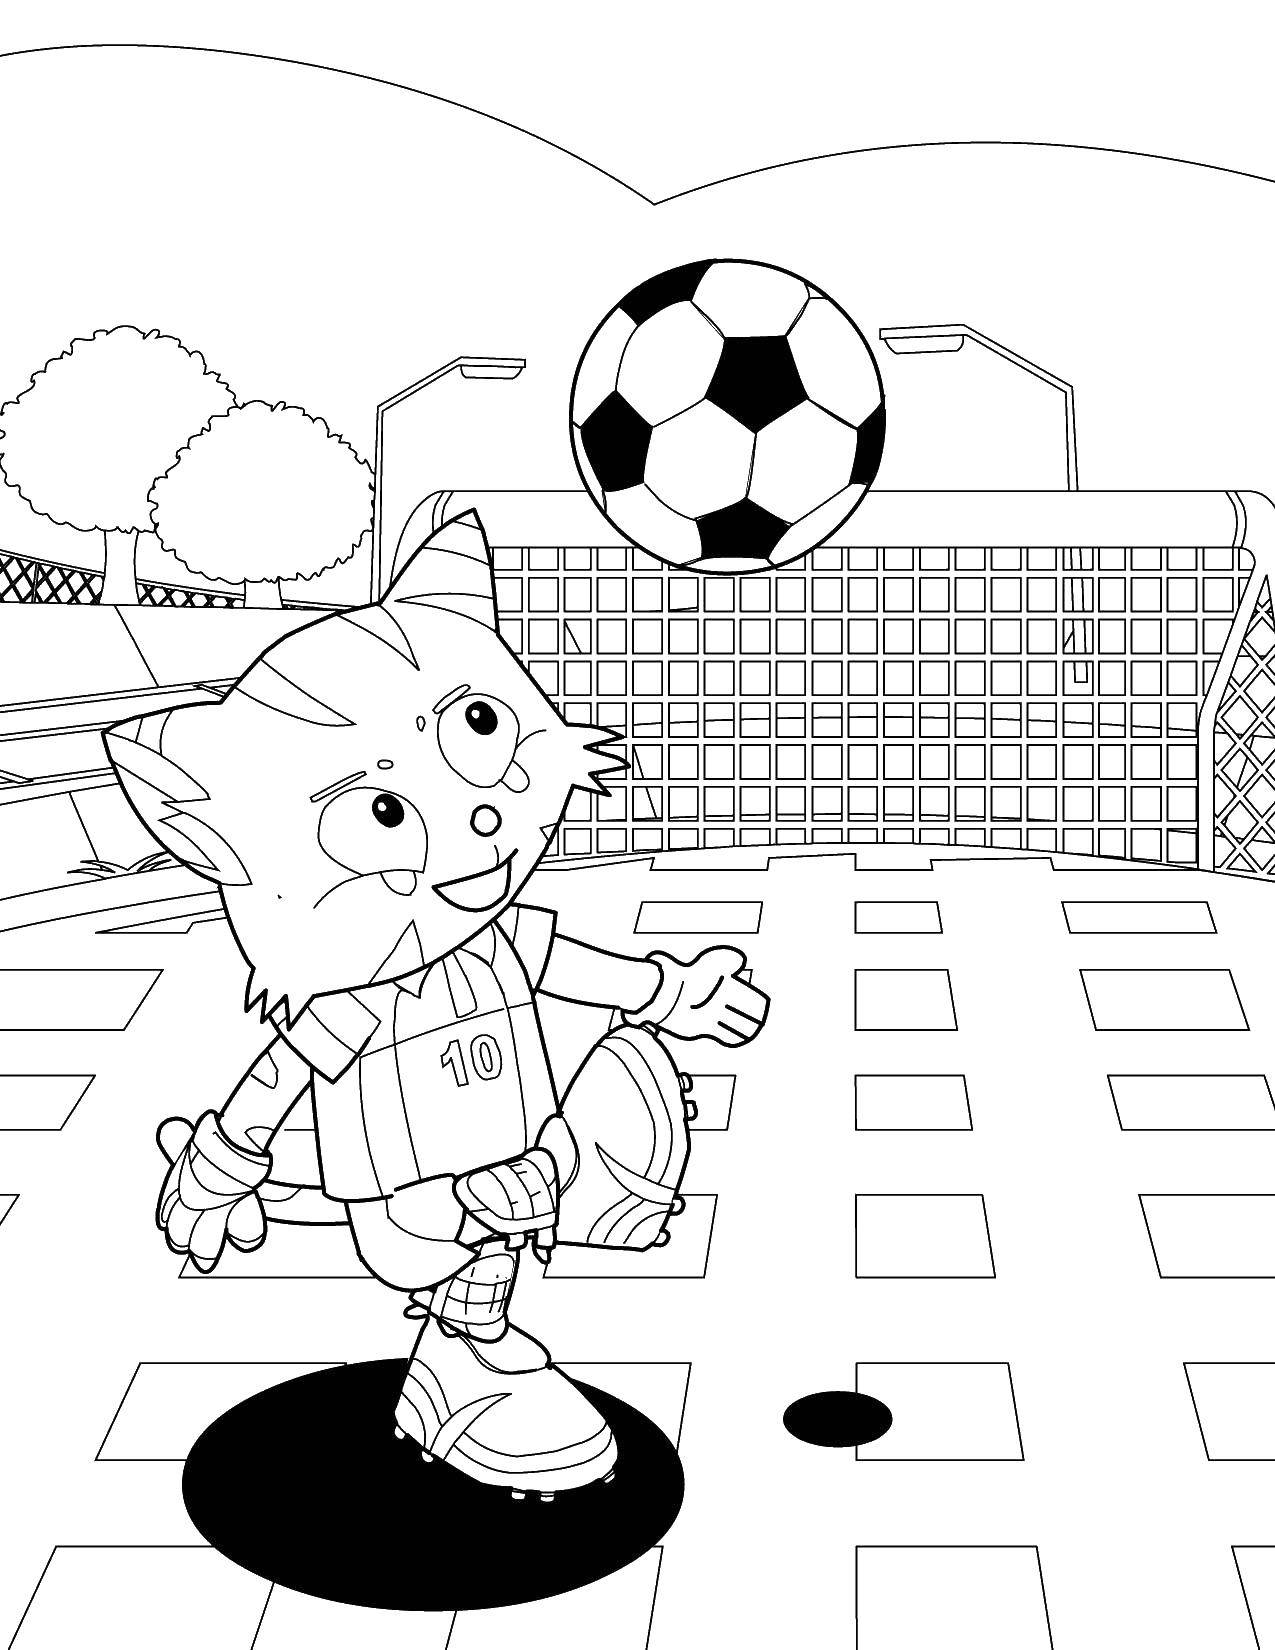 Опис: розмальовки  Котик грає у футбол. Категорія: Футбол. Теги:  футбол, спорт, котик.